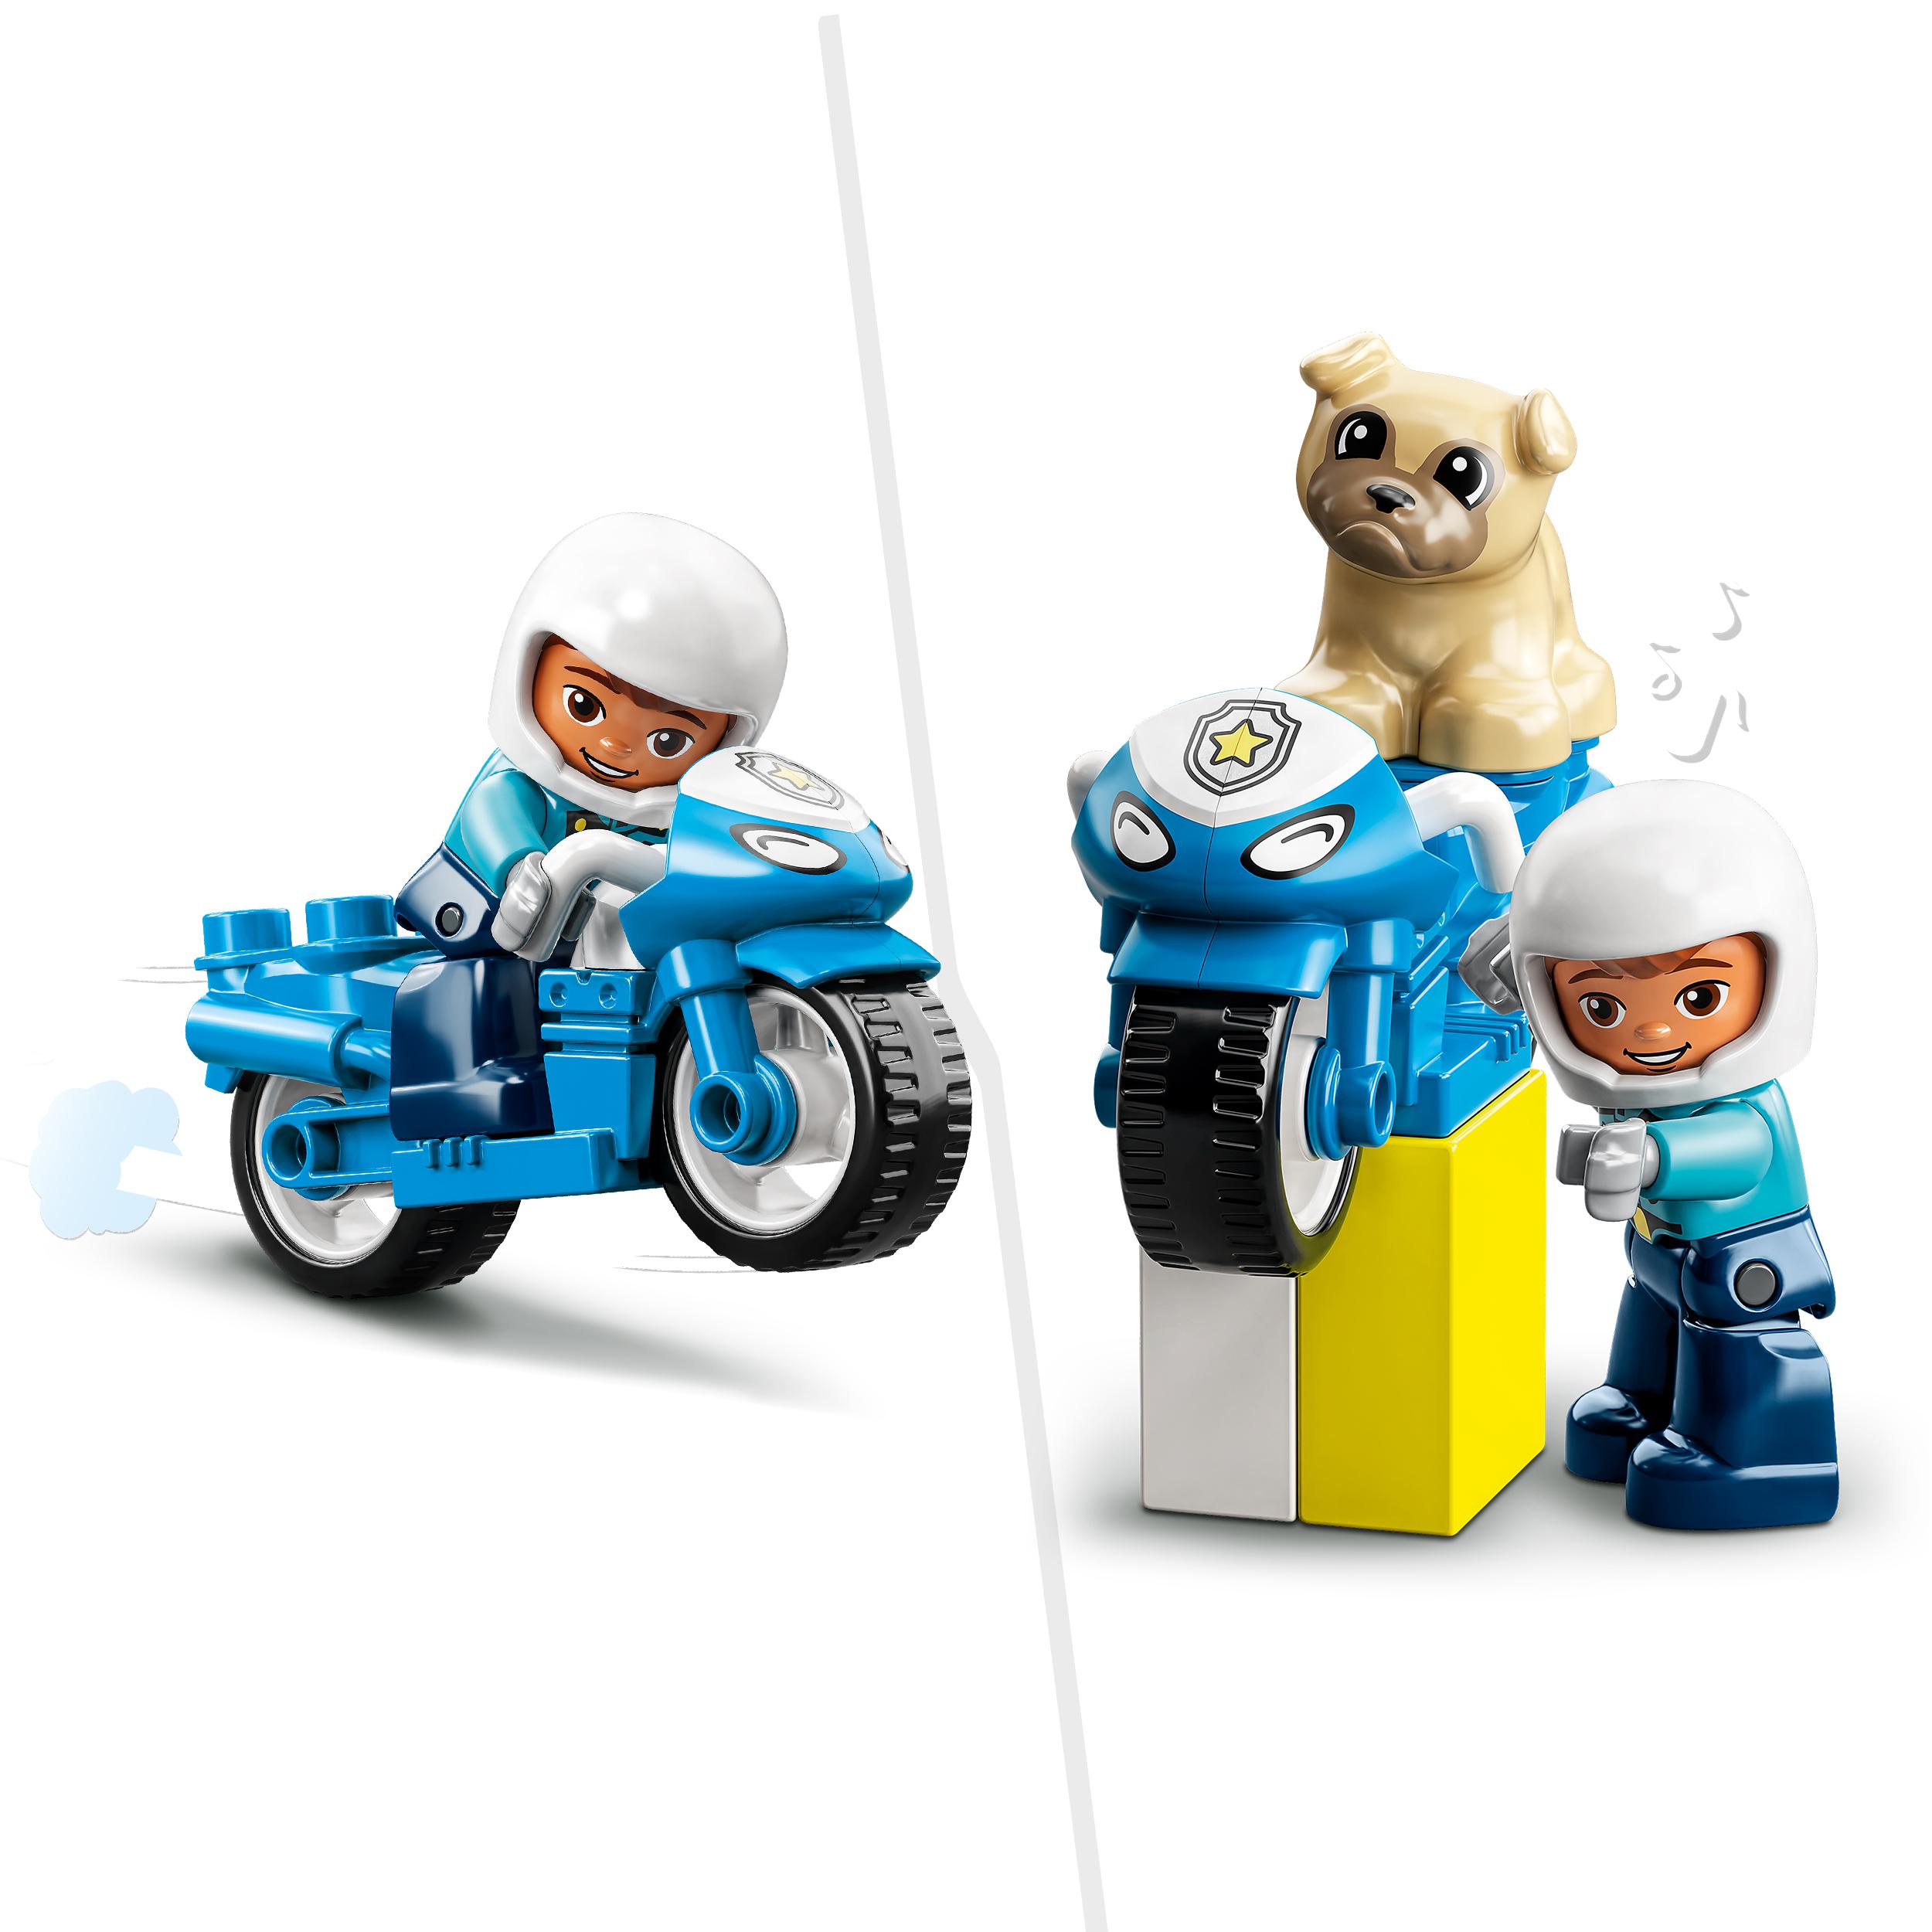 Lego duplo 10967 motocicletta della polizia, moto giocattolo per bambini di 2+ anni, giochi creativi ed educativi - LEGO DUPLO, Lego